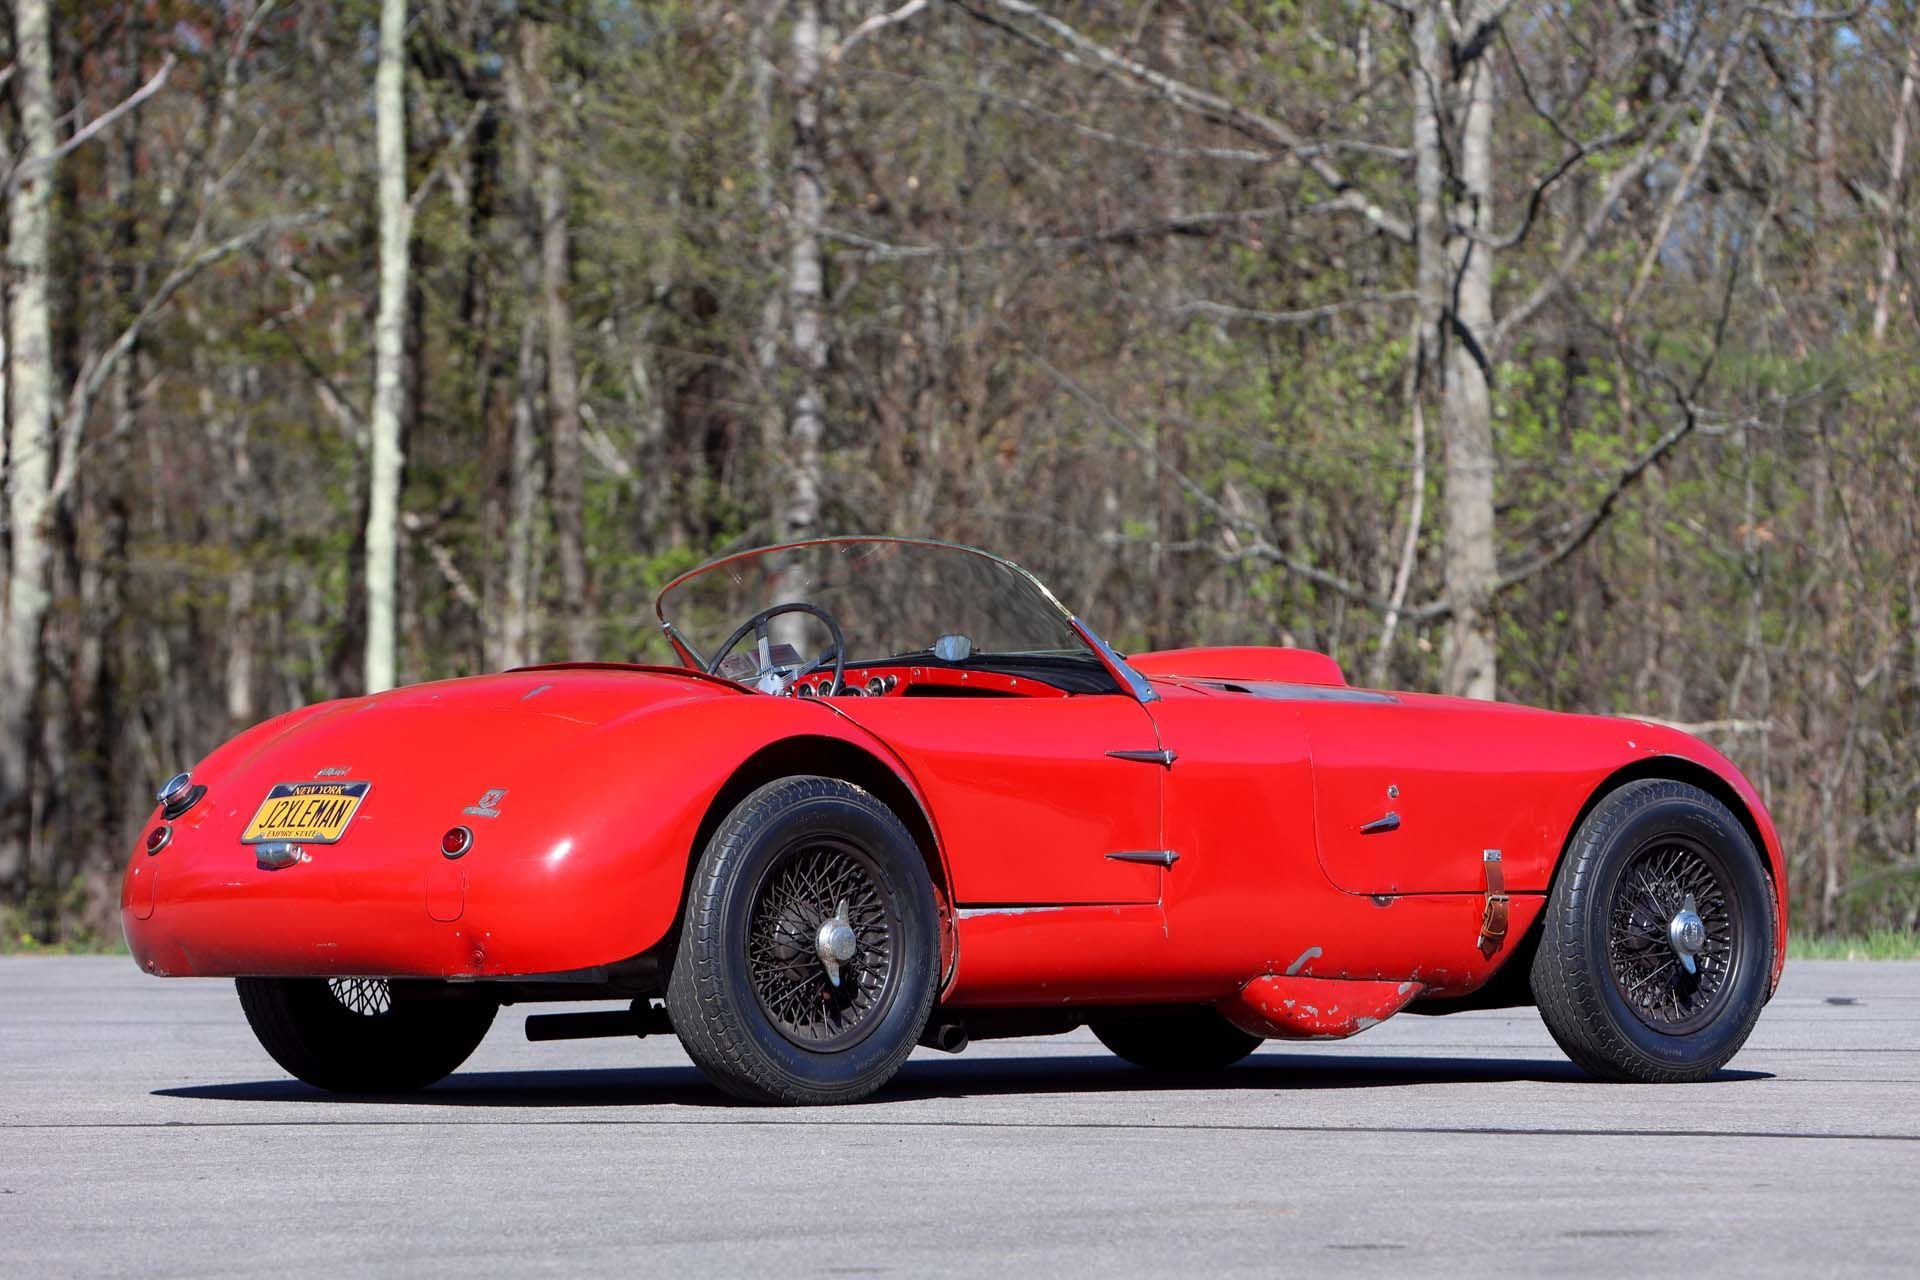 For Sale 1953 Allard J2X Le Mans